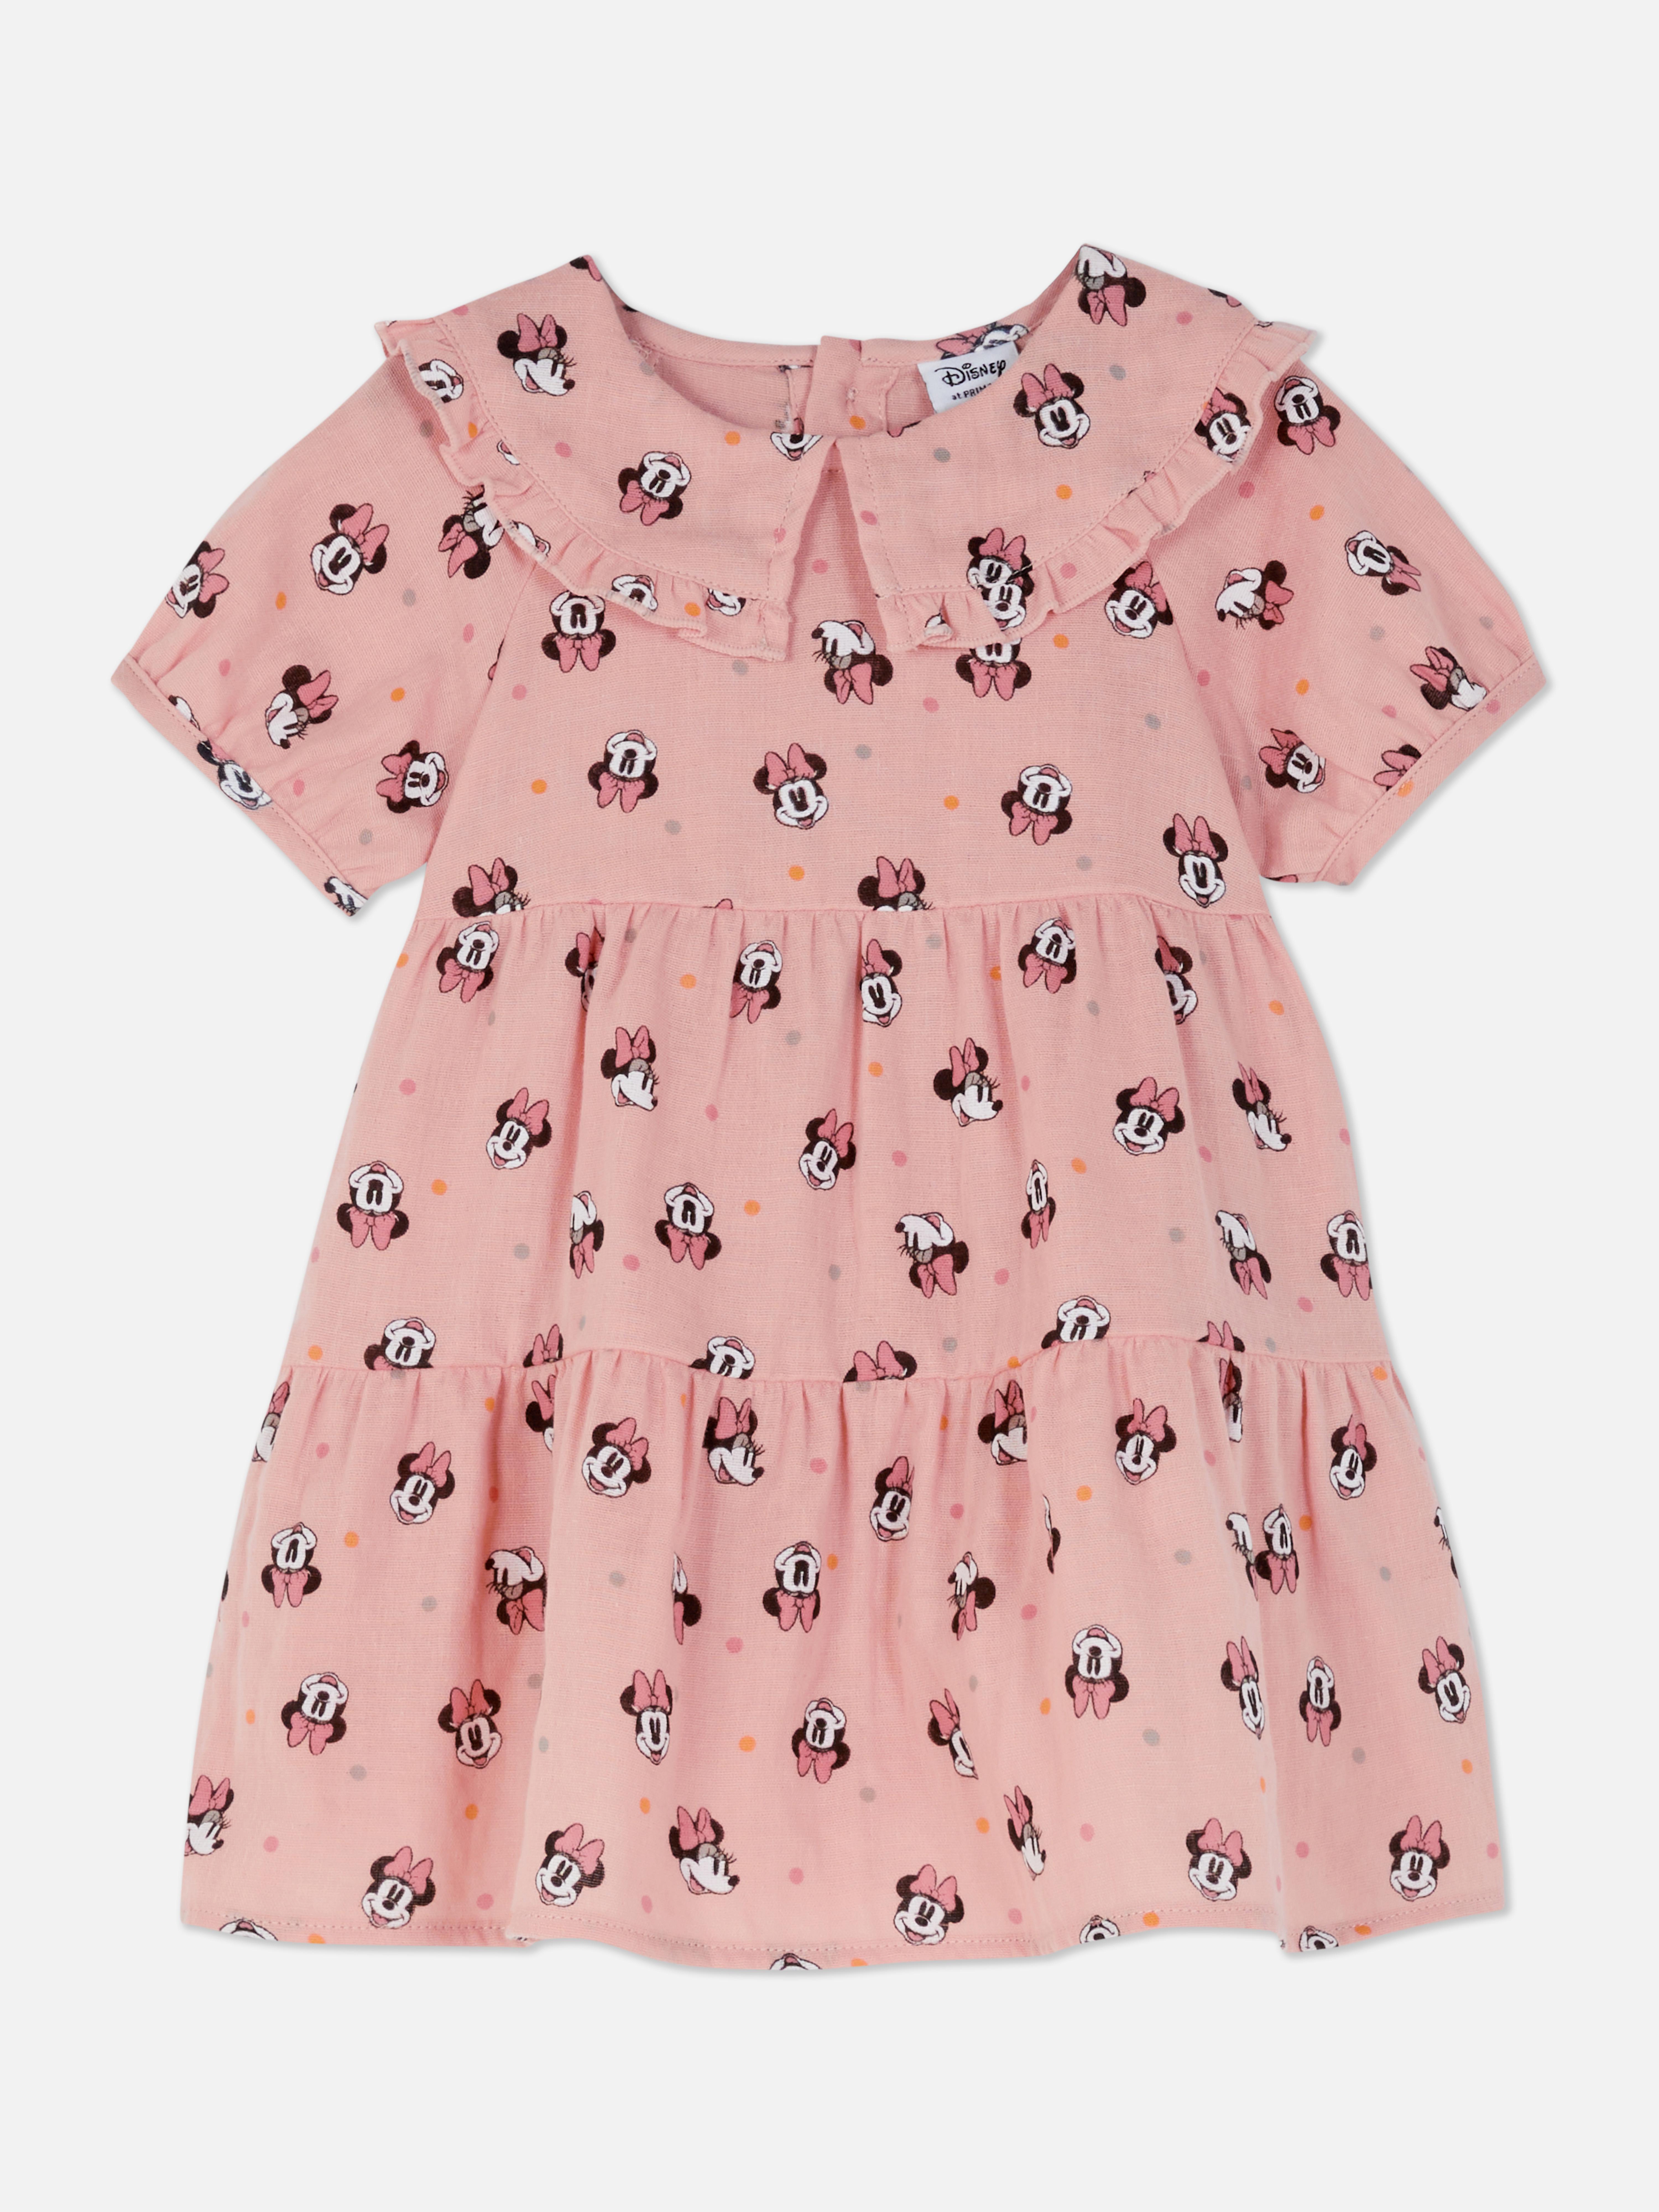 Disney’s Minnie Mouse Originals Tiered Dress